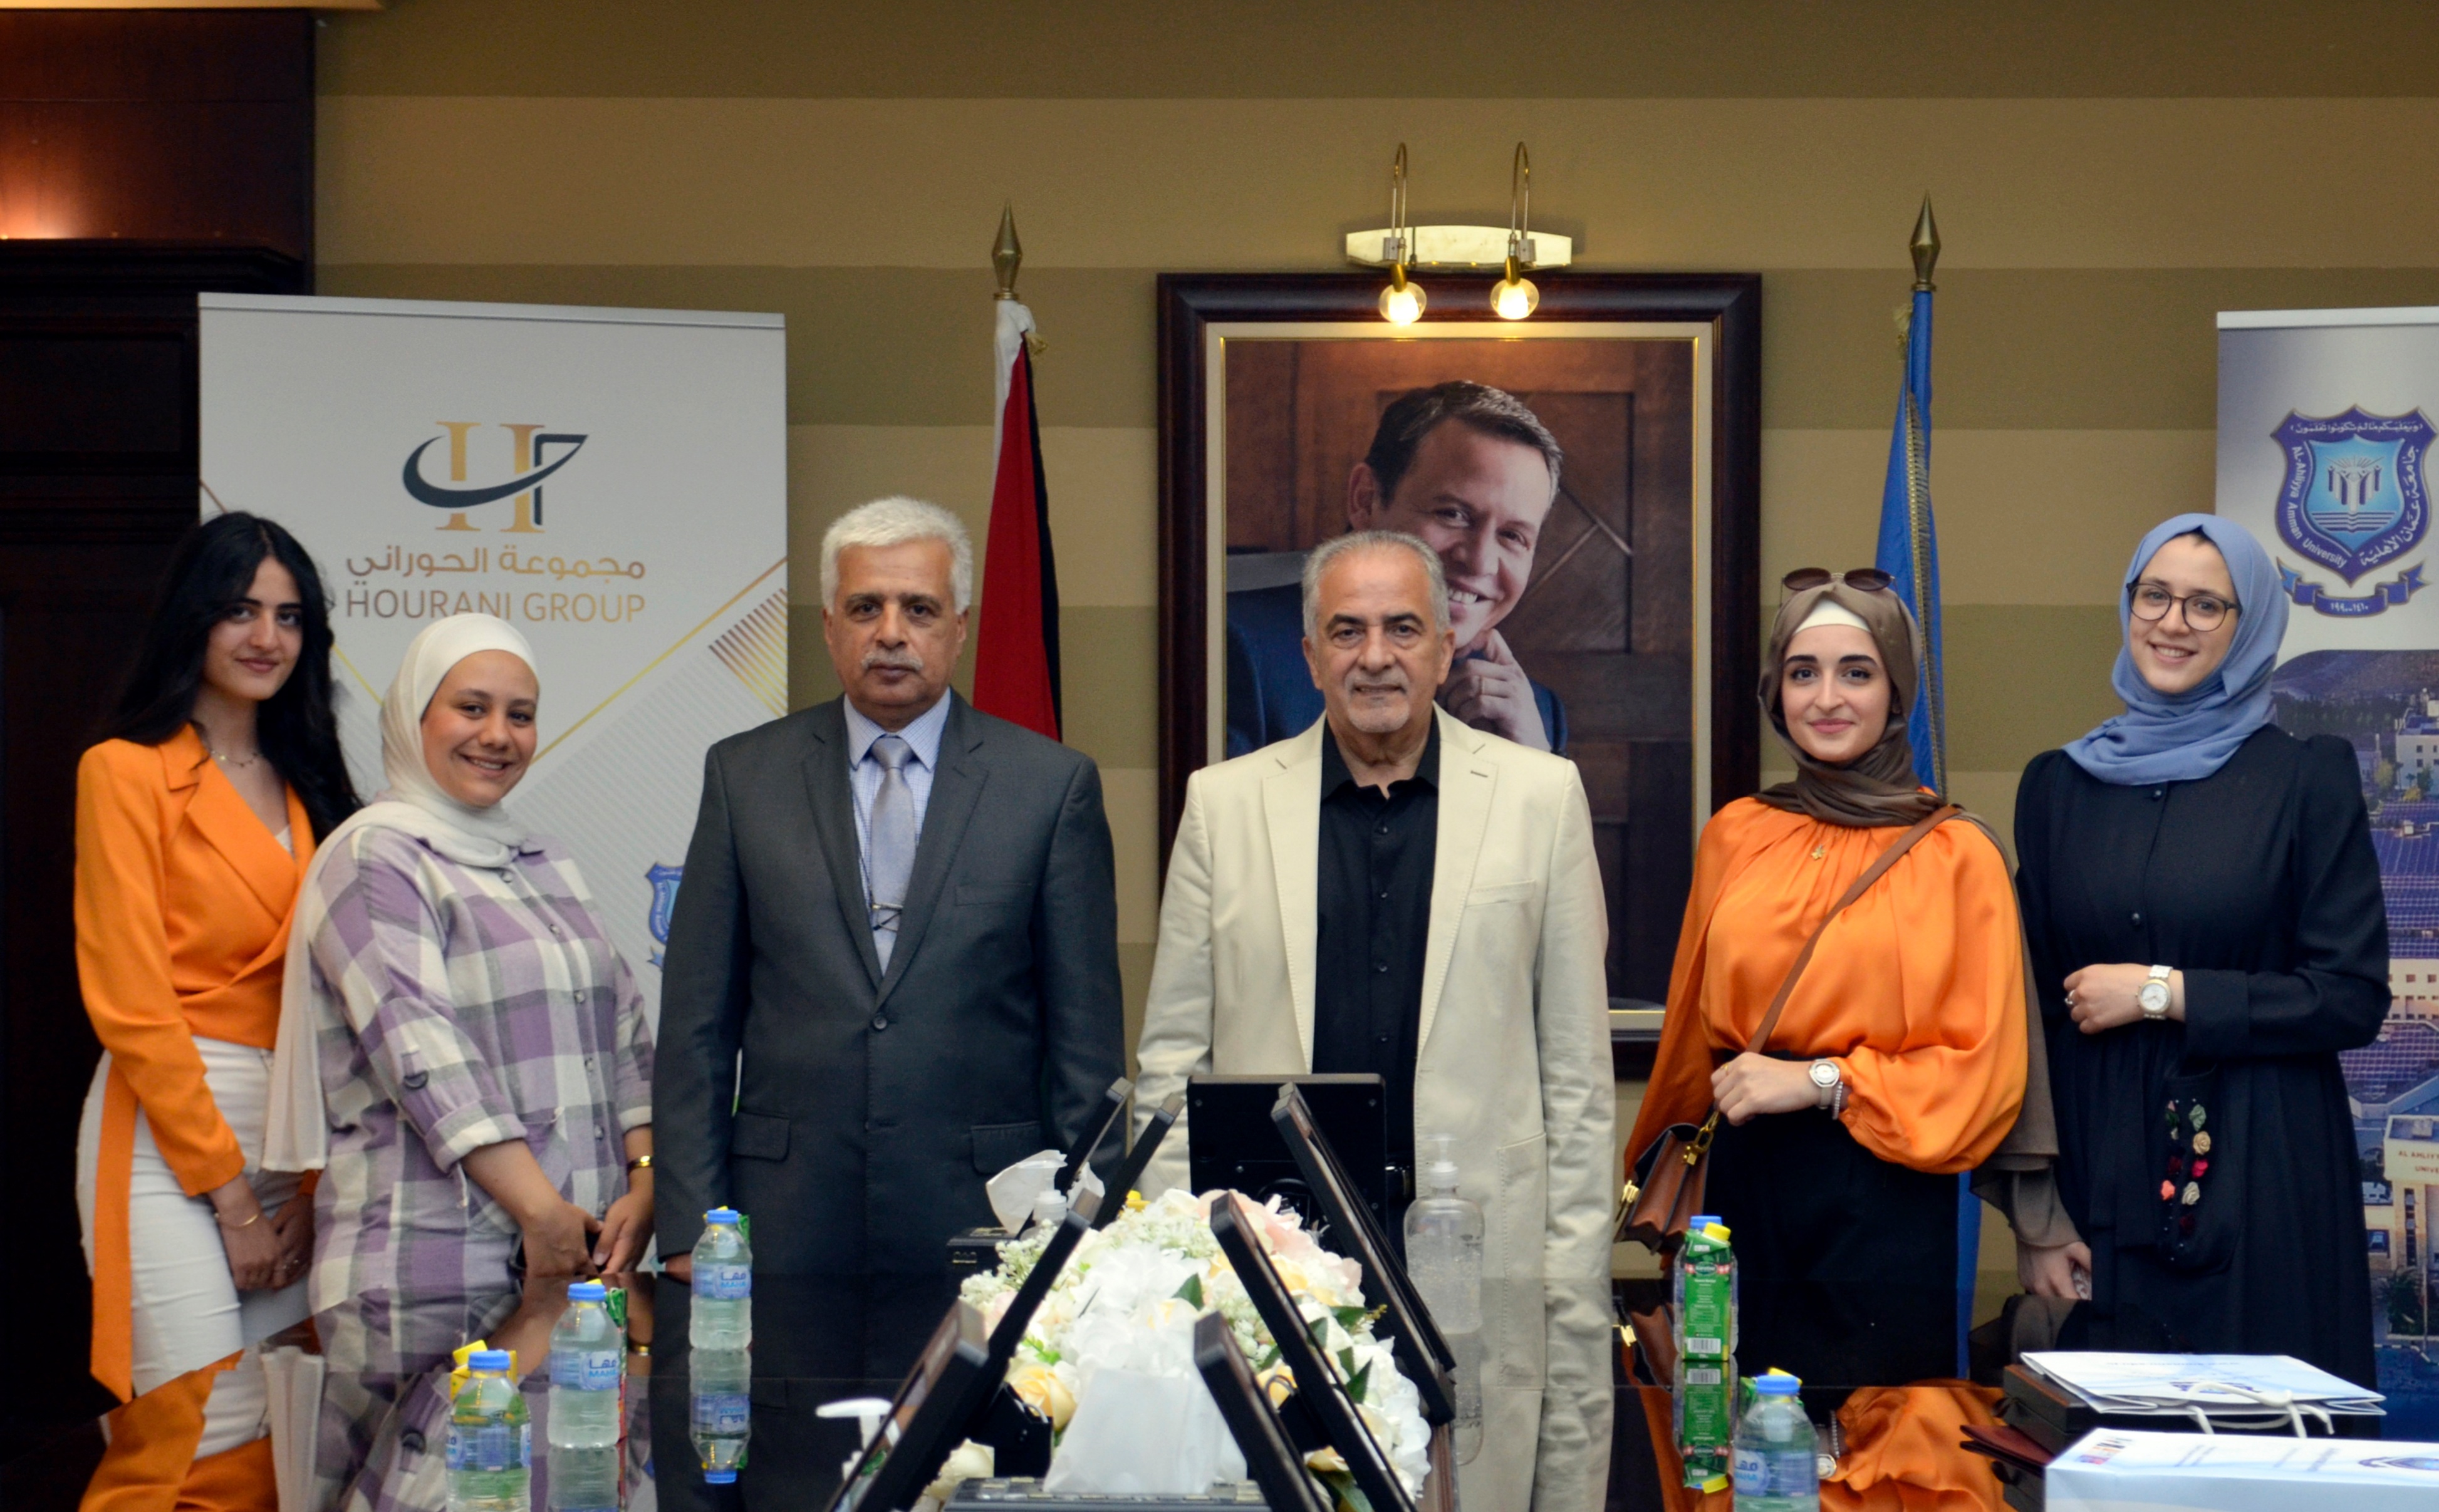 رئيس جامعة عمان الأهلية يكرم الطلبة الفائزين في جائزة الحوراني للفنون والتصميم - الدورة الثانية 2022